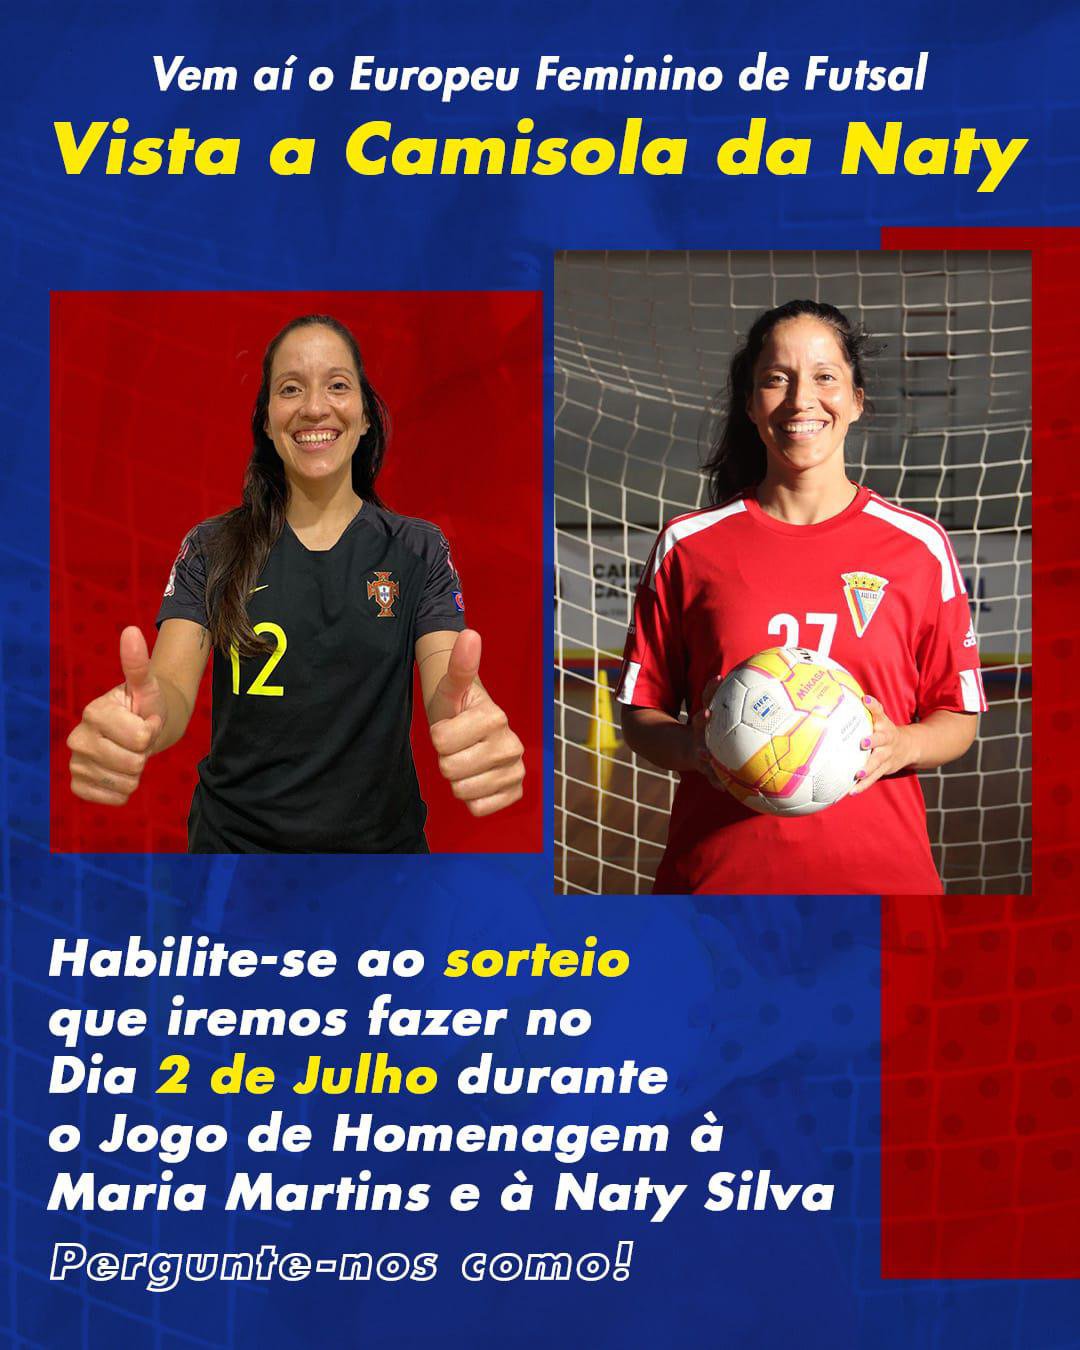 Jogo de Homenagem: Maria Martins e Naty Silva